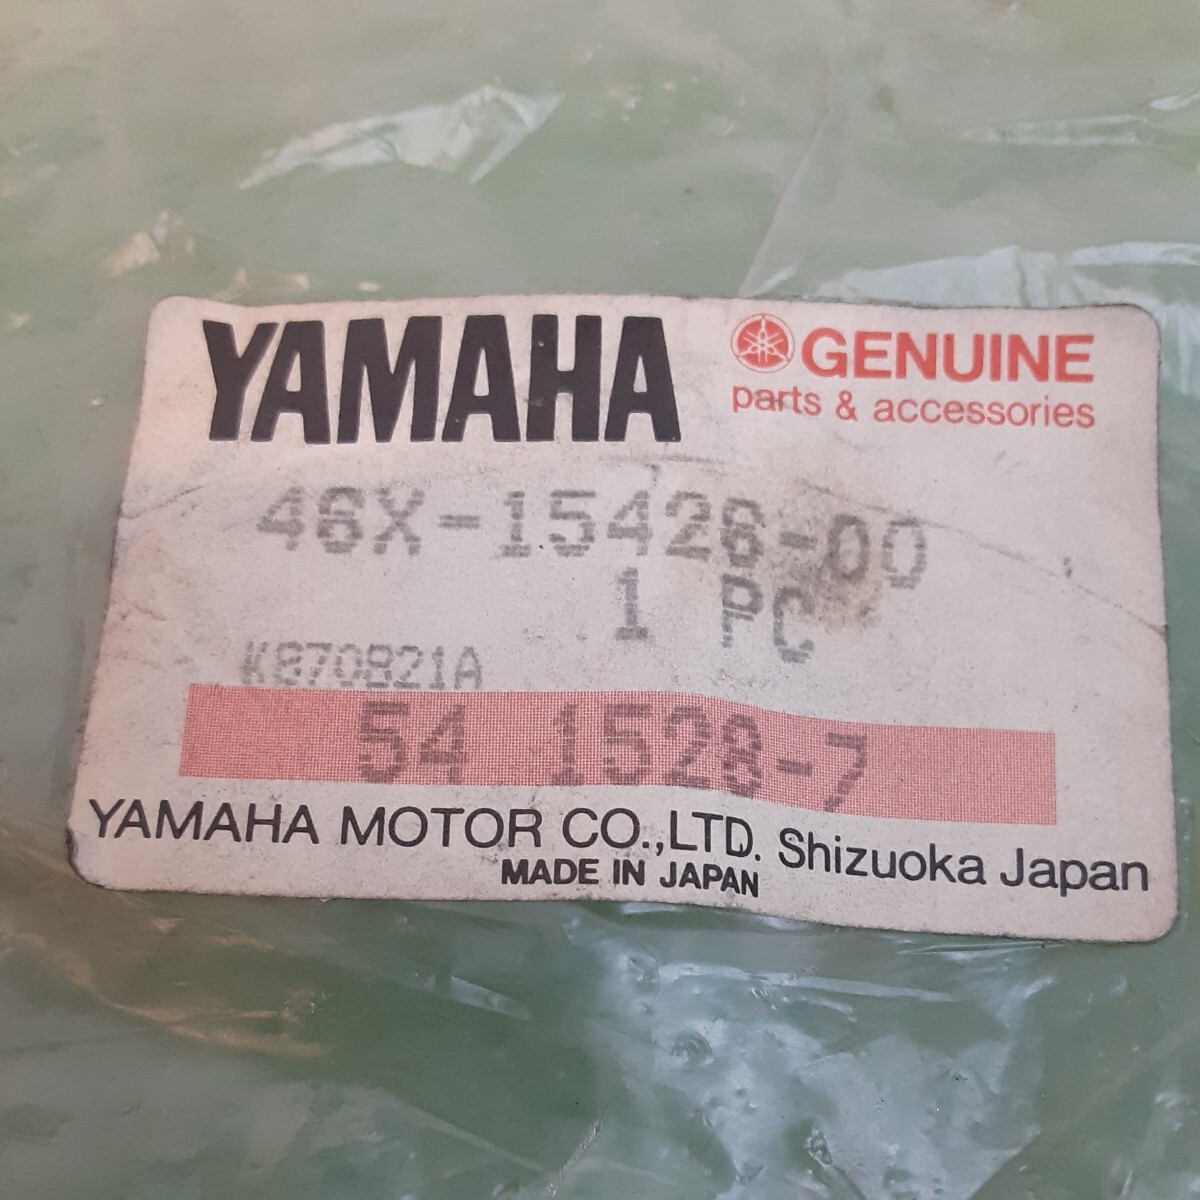 ヤマハ FZ400R 左カバー 新品未使用部品、部品番号46X-15416-00とリングラバー33M-15449-00_画像10